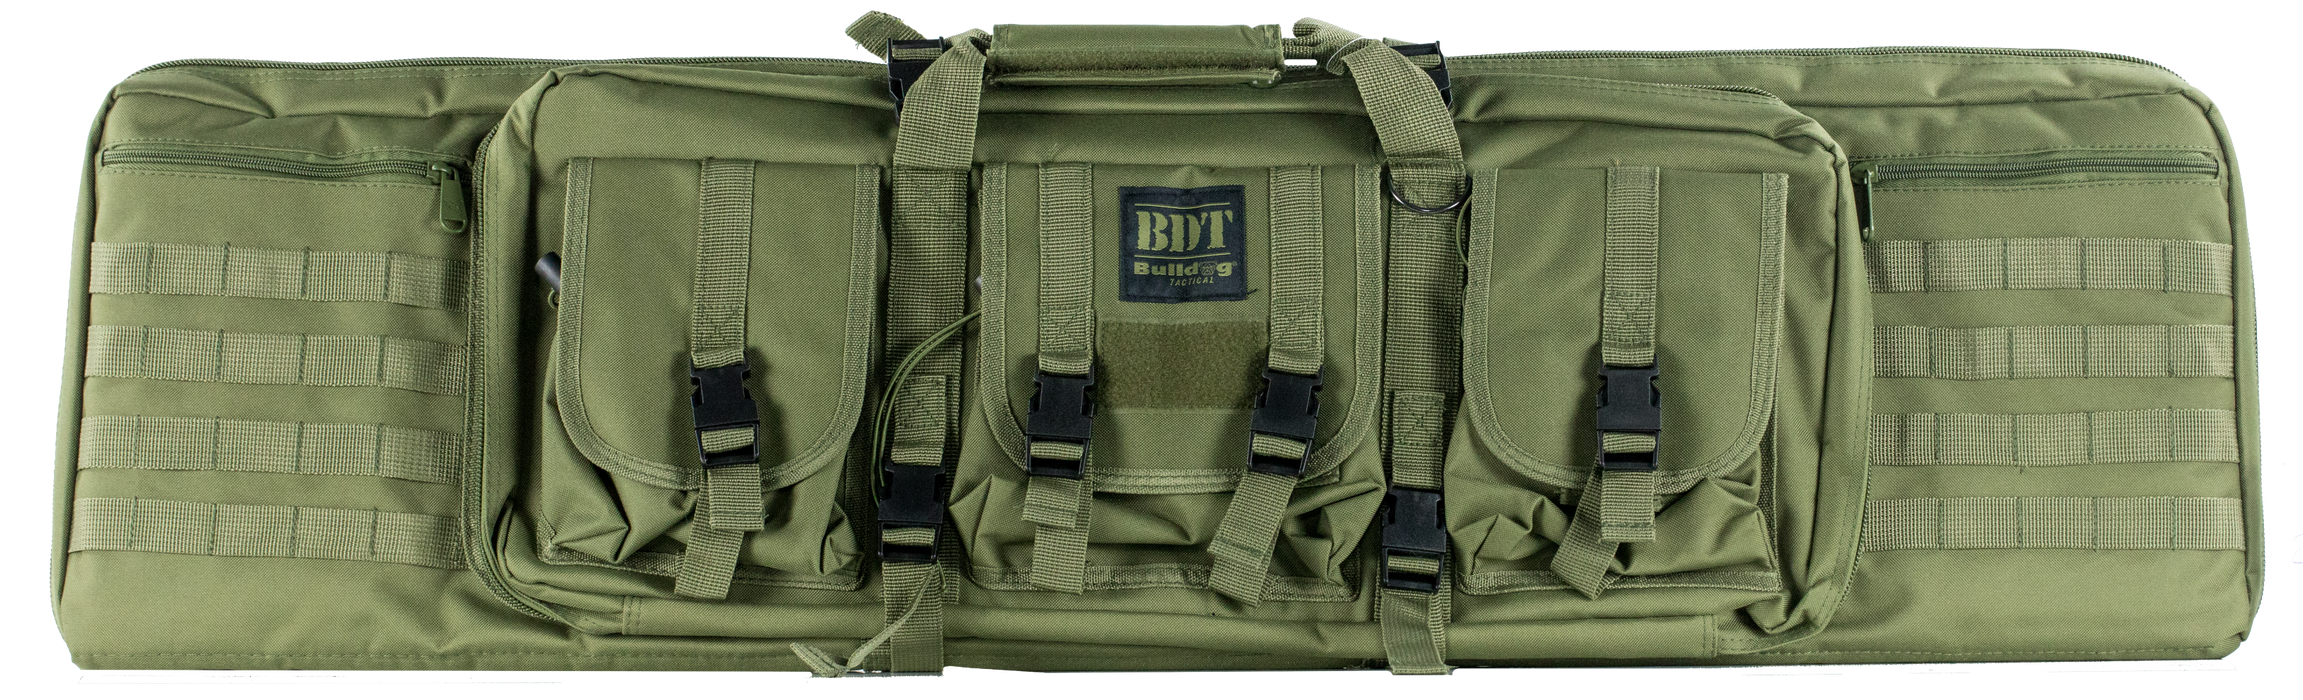 Bulldog Tactical, Bdog Bdt40-43g  Tact Sng Rfl Cs 43 Grn